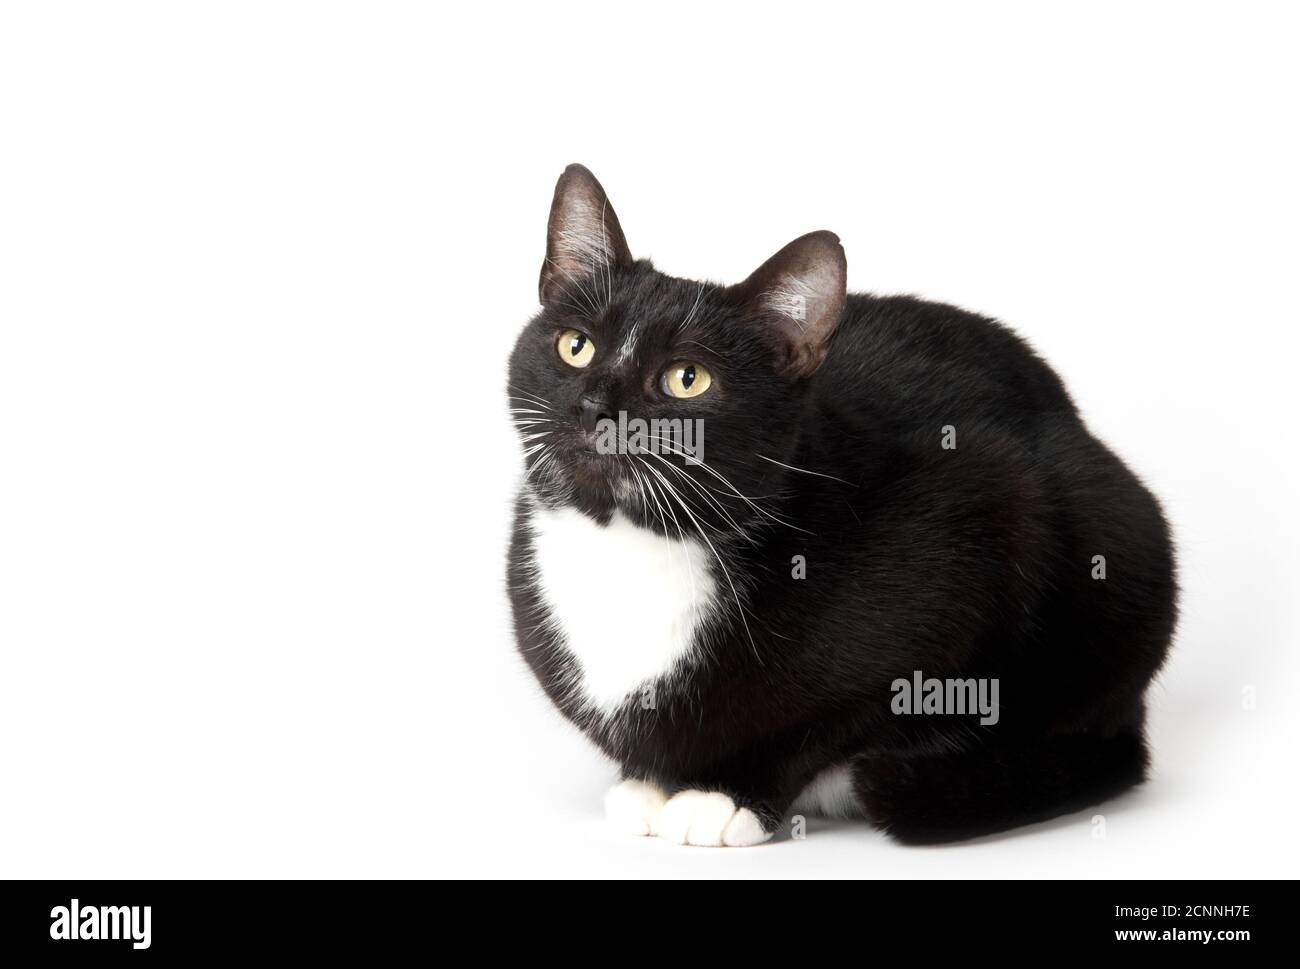 Cute nero e bianco tuxedo gatto su sfondo bianco Foto Stock